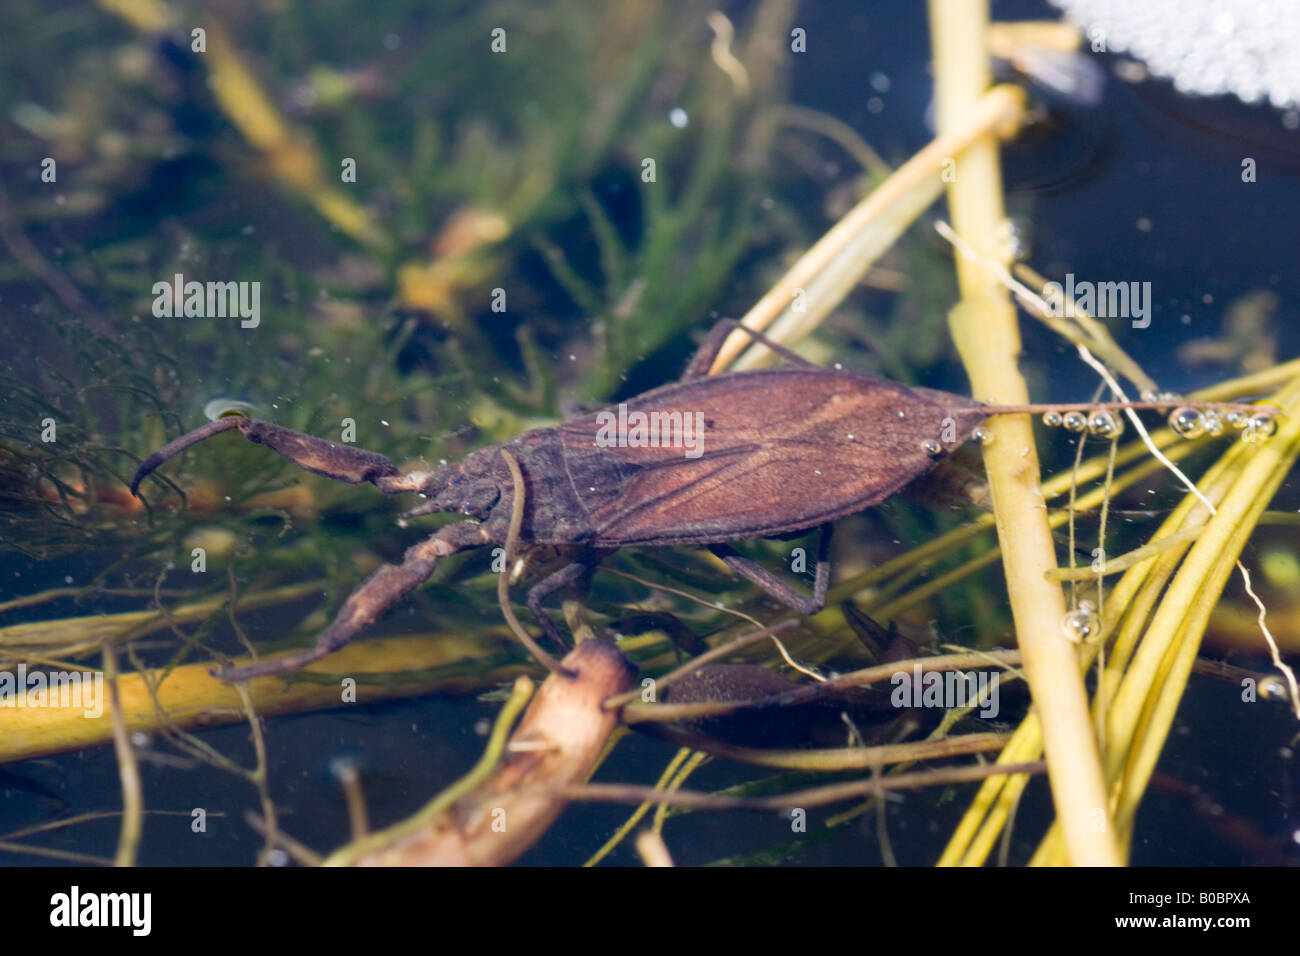 Agua scorpion, Nepa cinerea en un estanque Foto de stock